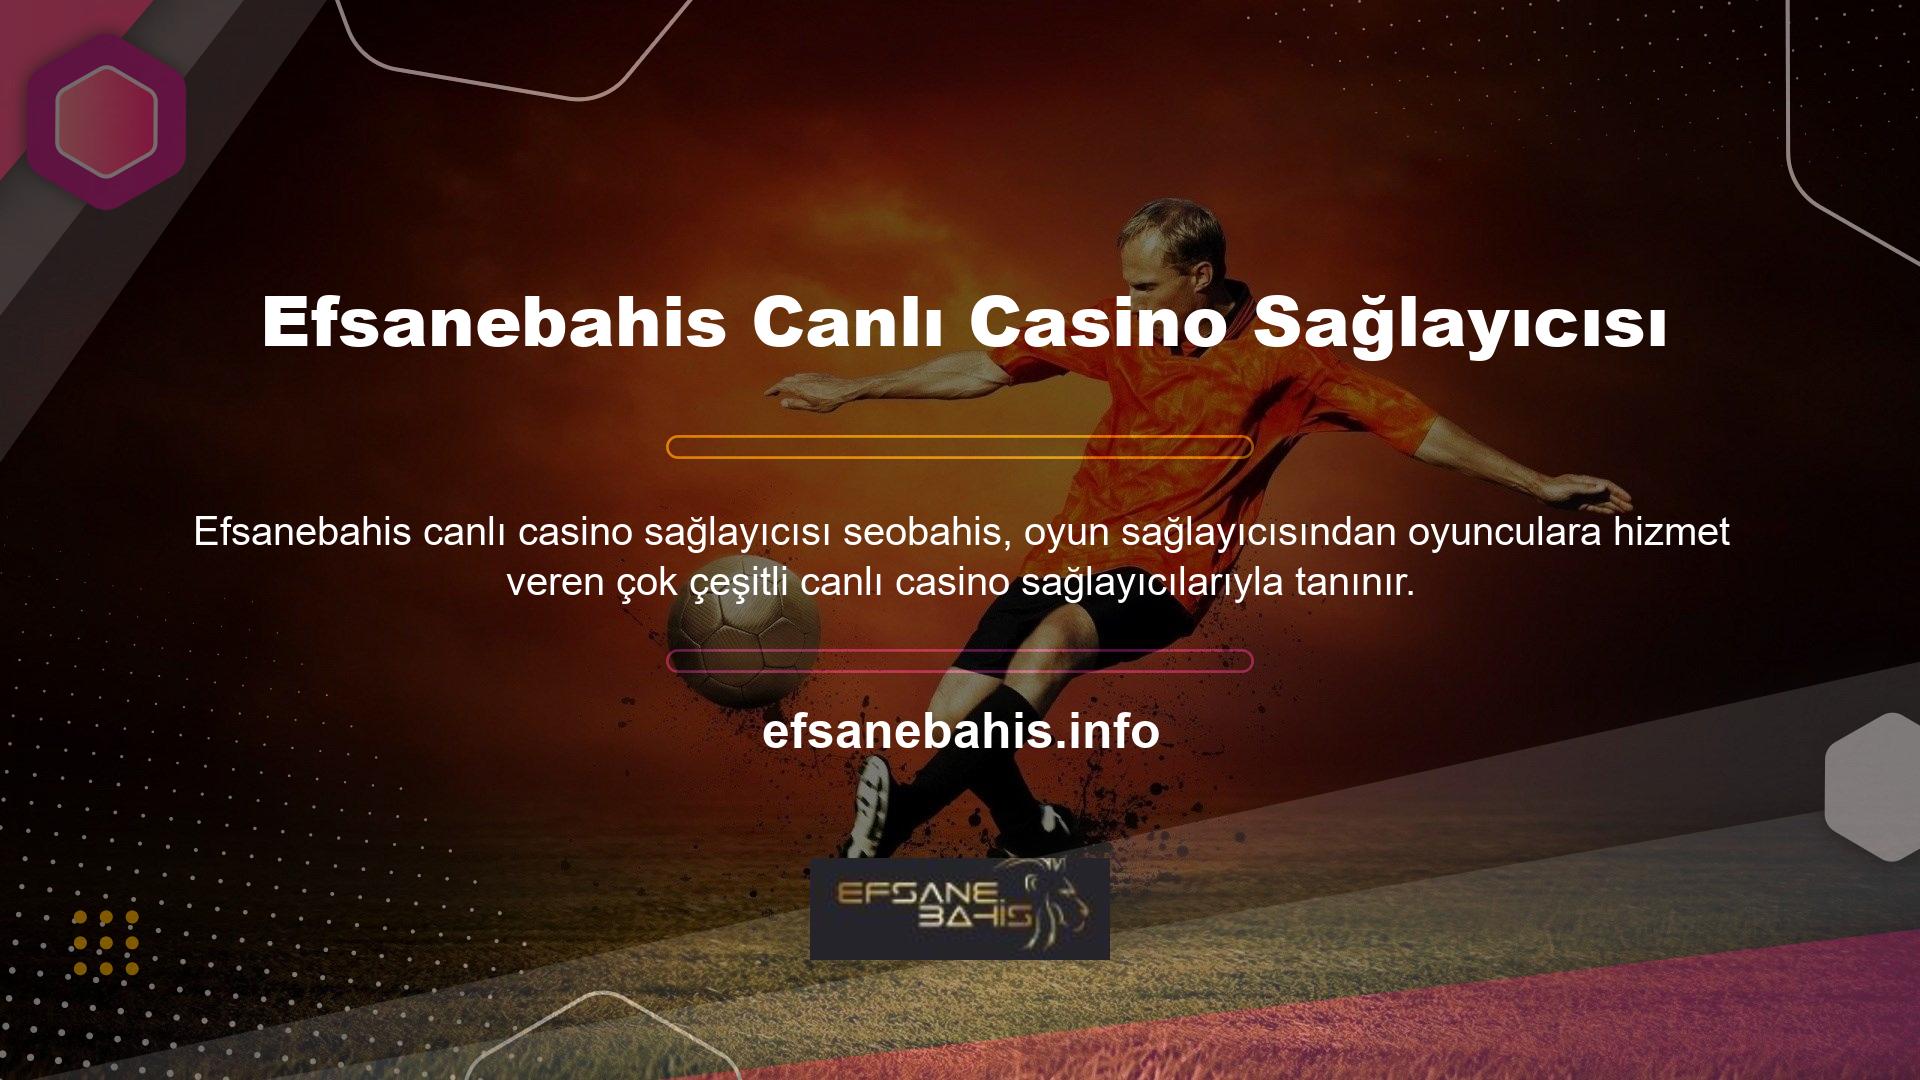 Oyuncular 8 oyun sağlayıcısından ve onlarca Efsanebahis canlı casino sağlayıcısından canlı oyunlar alabilirler